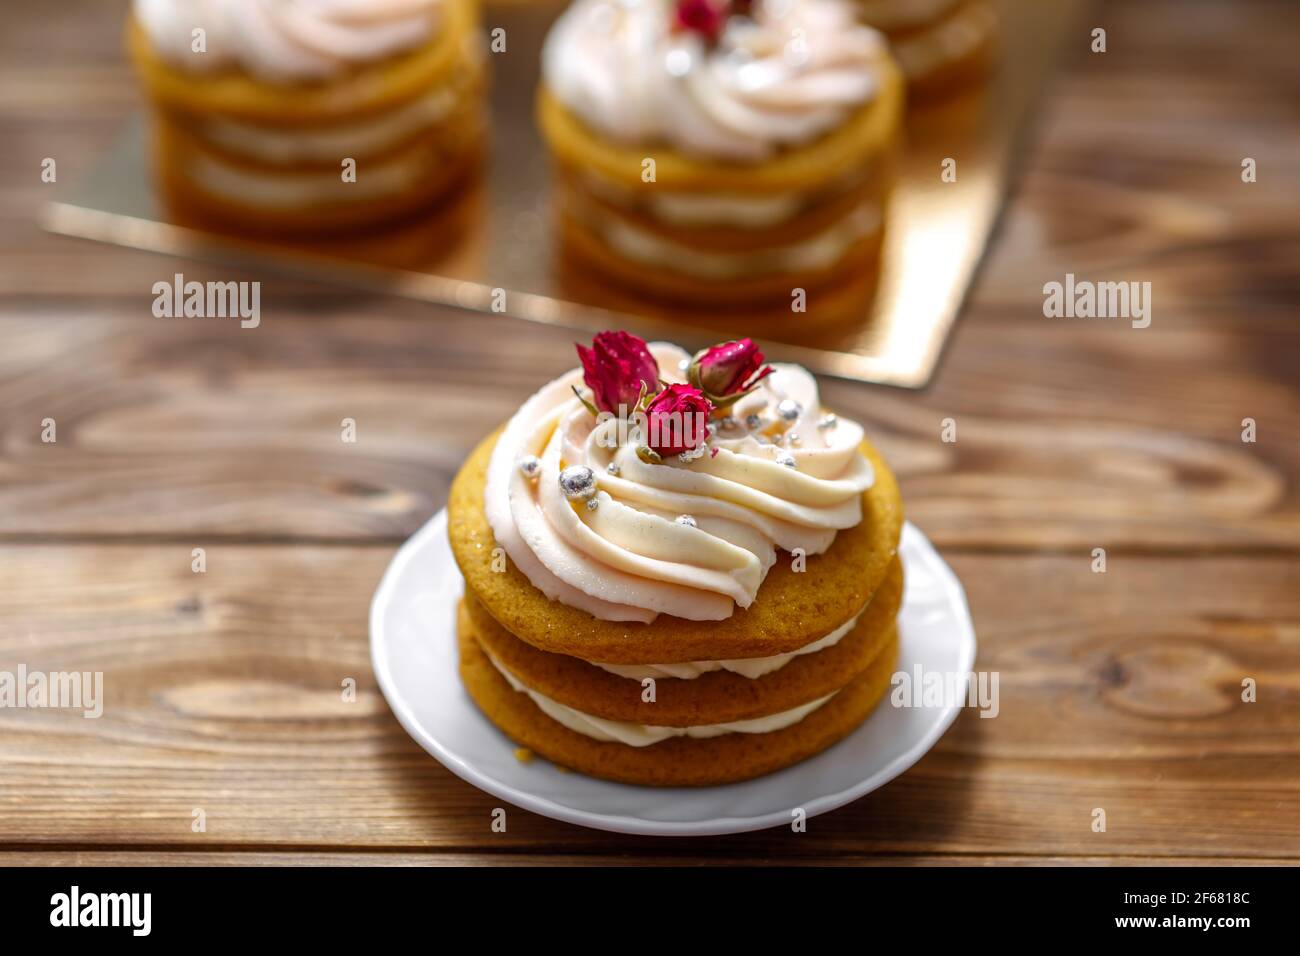 Gâteau éponge à la crème, décoré de petites fleurs. Le concept d'une friandise festive. Banque D'Images